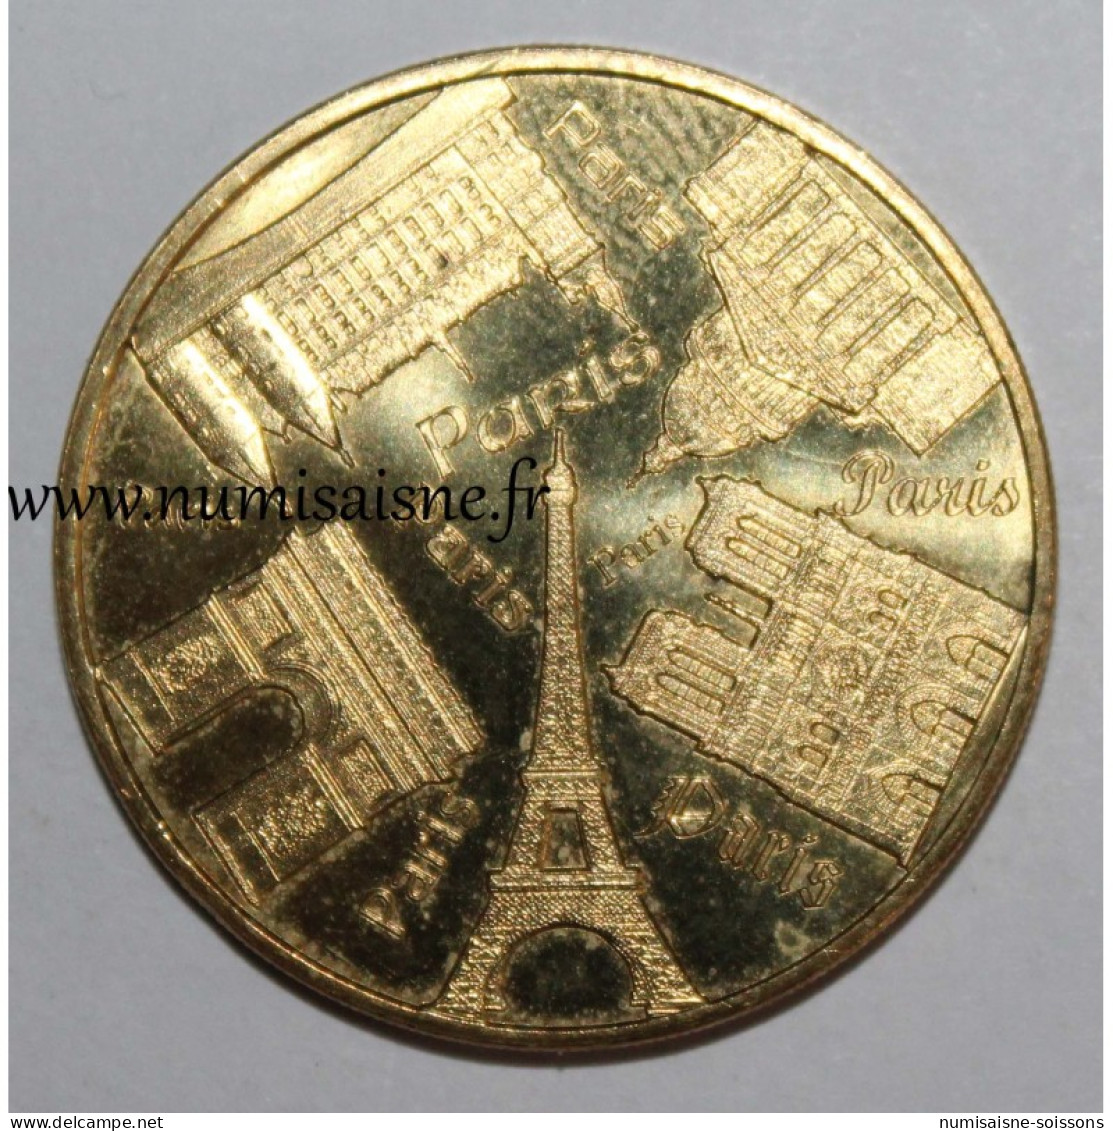 75 - PARIS - CENTRE DES MONUMENTS NATIONAUX - Monnaie De Paris - 2017 - Undated